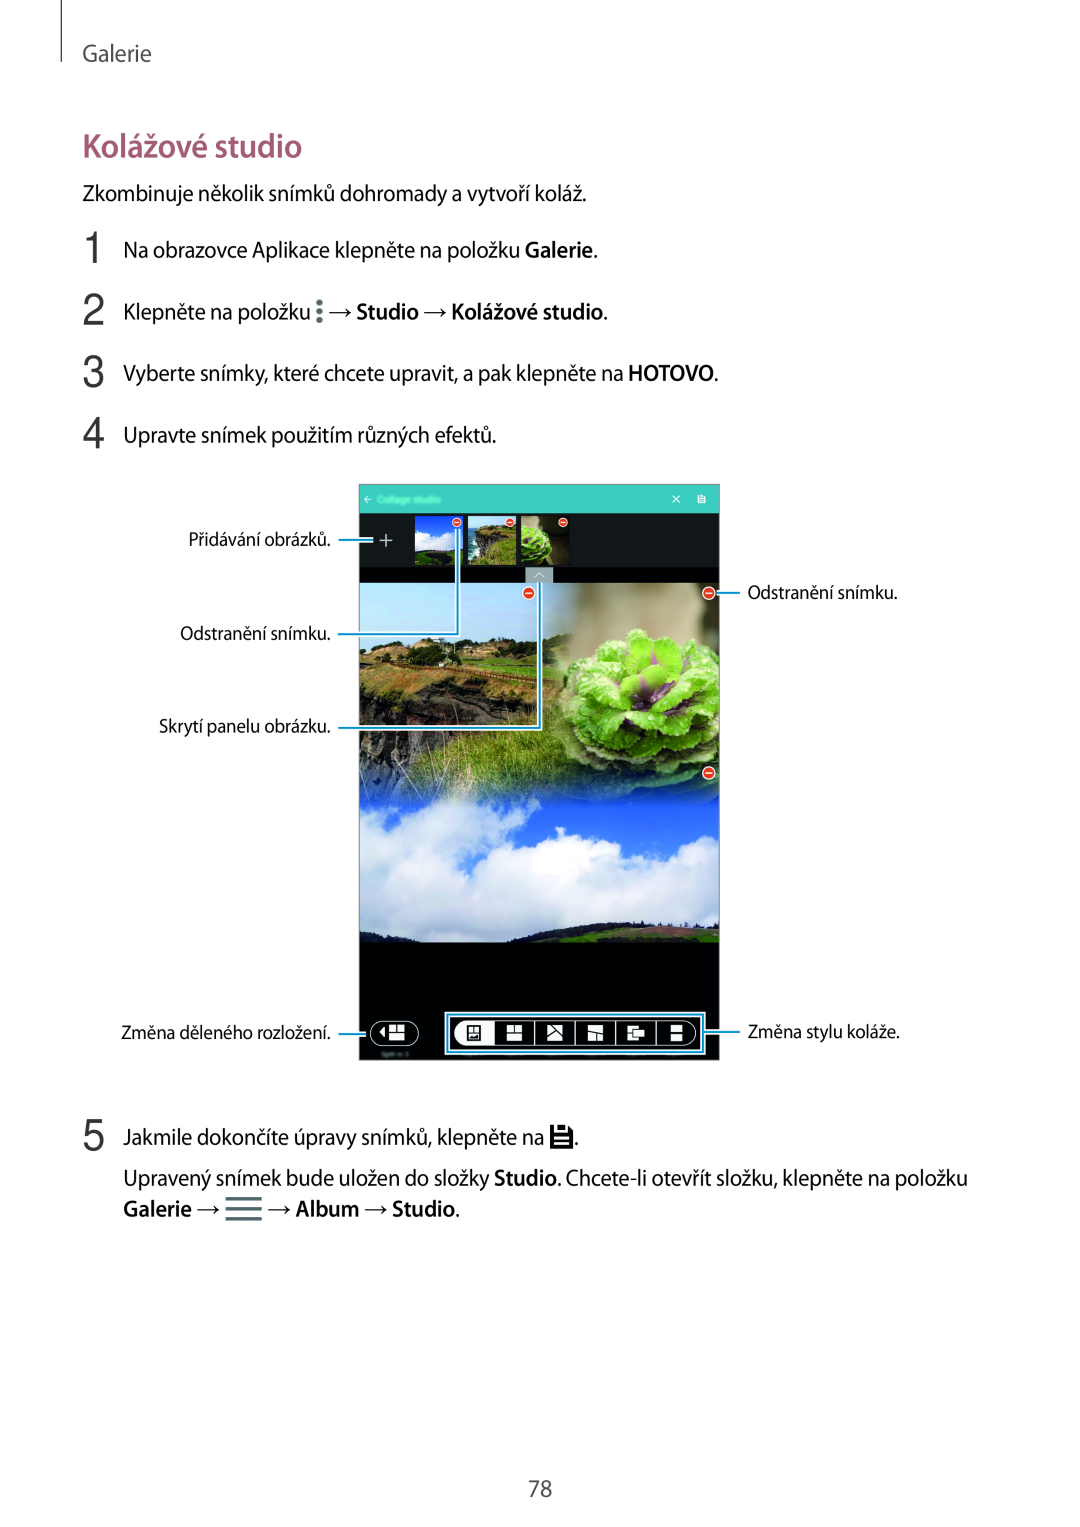 Samsung SM-T700NZWAXEZ, SM-T700NZWAXEO Kolážové studio, Galerie, Přidávání obrázků Odstranění snímku Skrytí panelu obrázku 